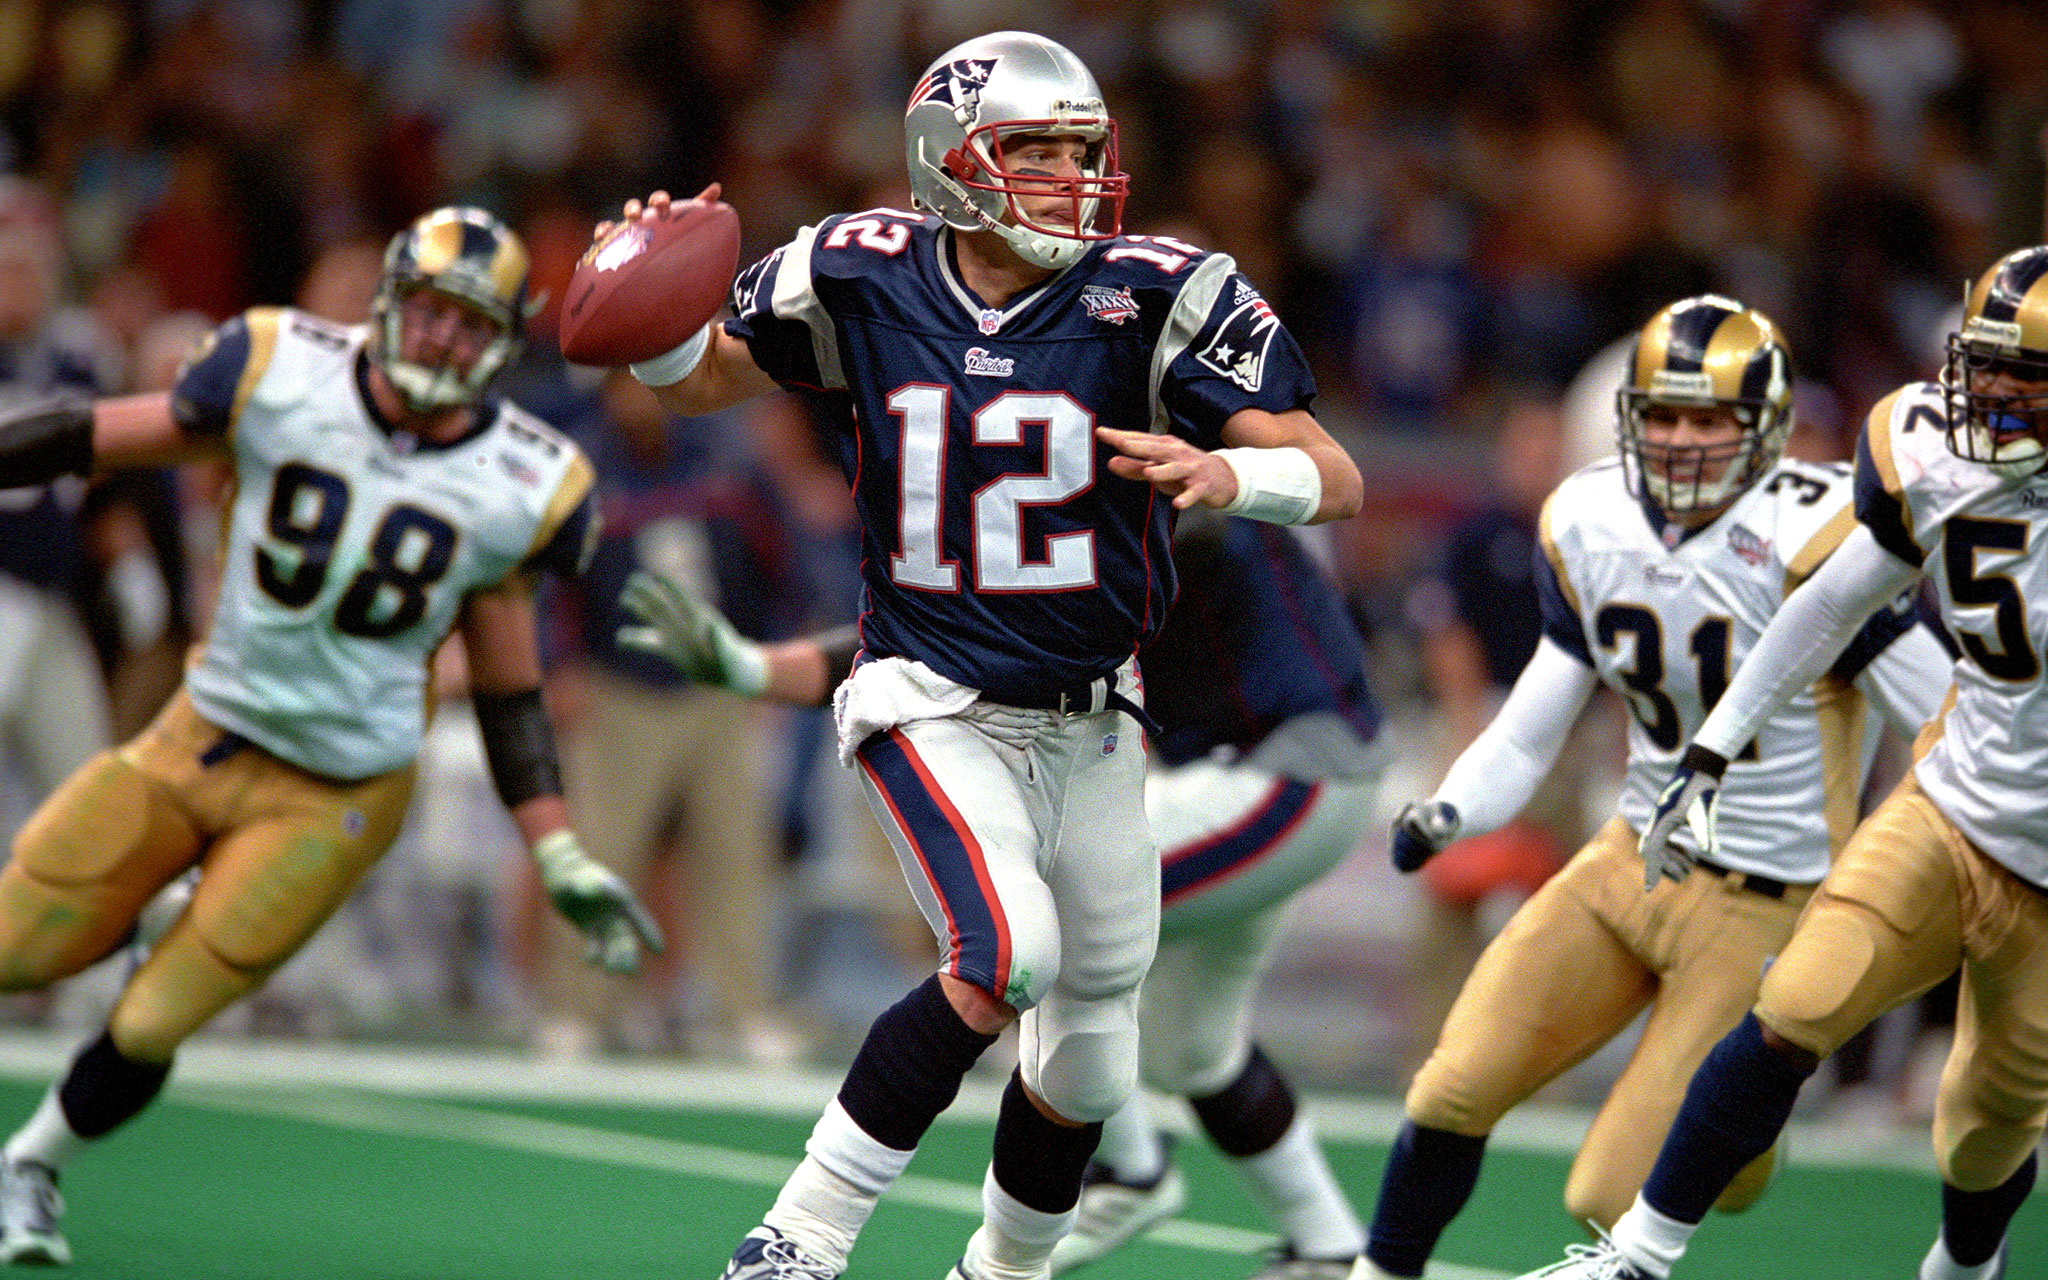 1. Feb. 3, 2002: Super Bowl XXXVI Patriots 20, Rams 17 - Top 20